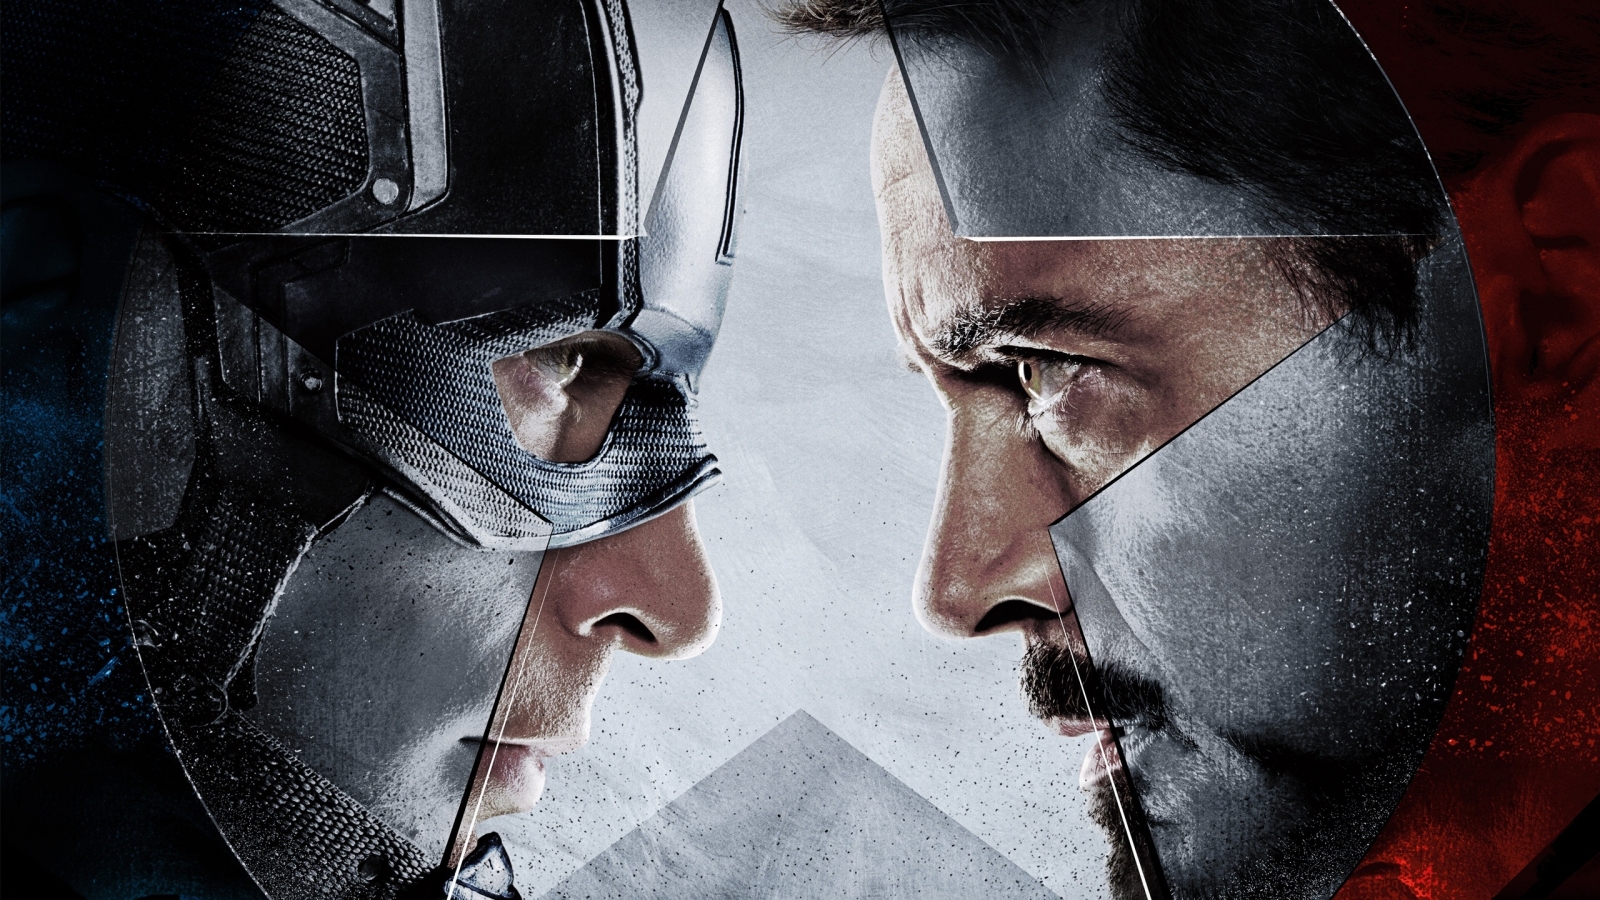 Captain America vs Iron Man  for 1600 x 900 HDTV resolution